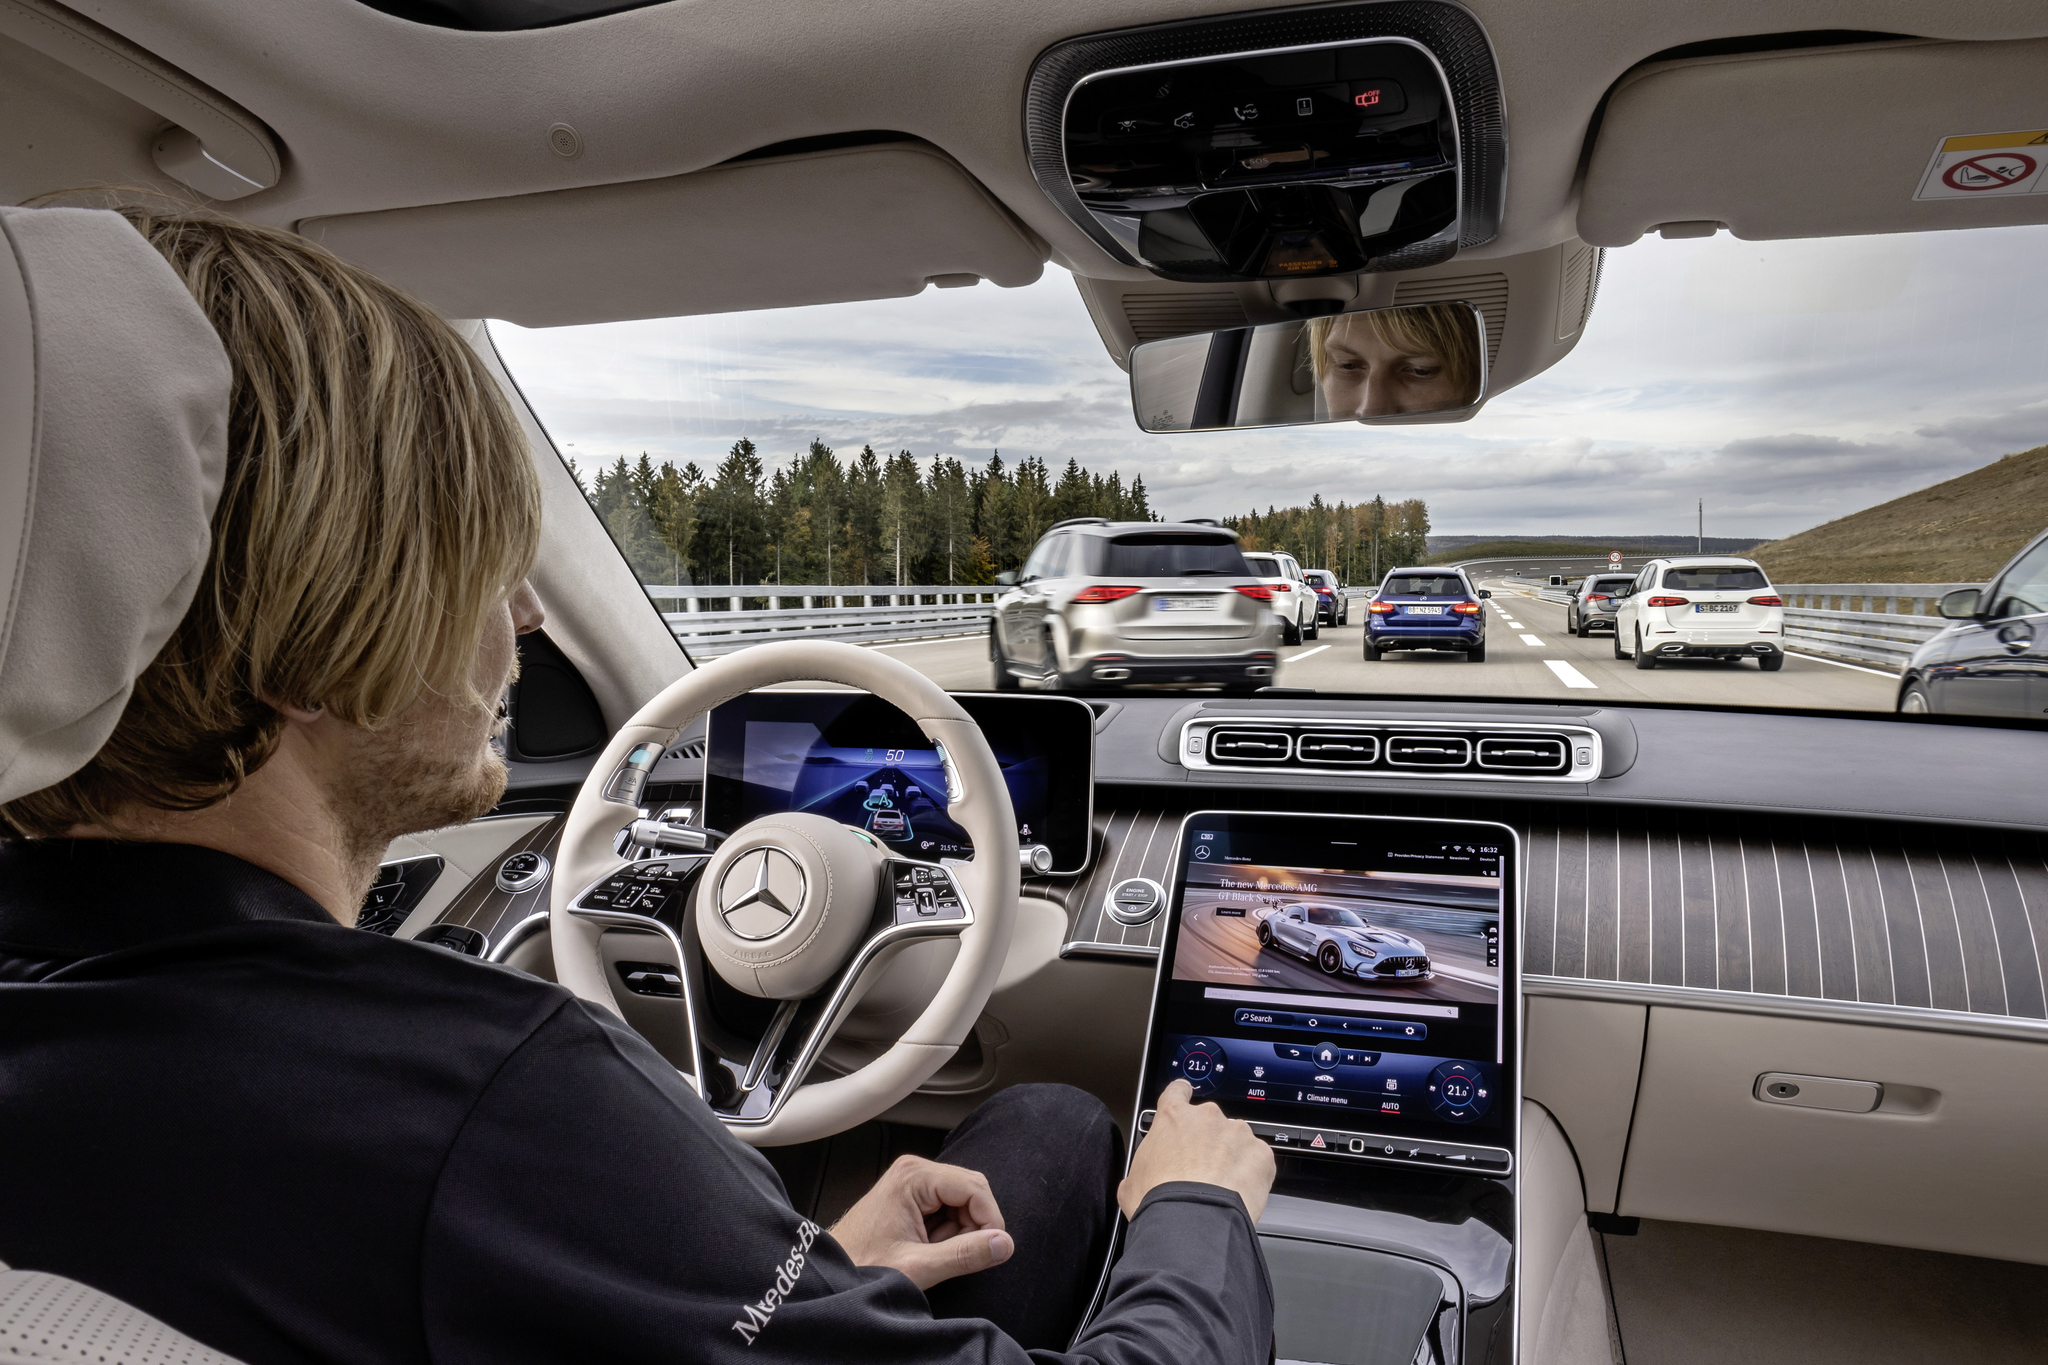 Mercedes-Benz - conduccion autonoma nivel 3 - aprobacion legal - Alemania - EQS - Clase S - Drive Pilot